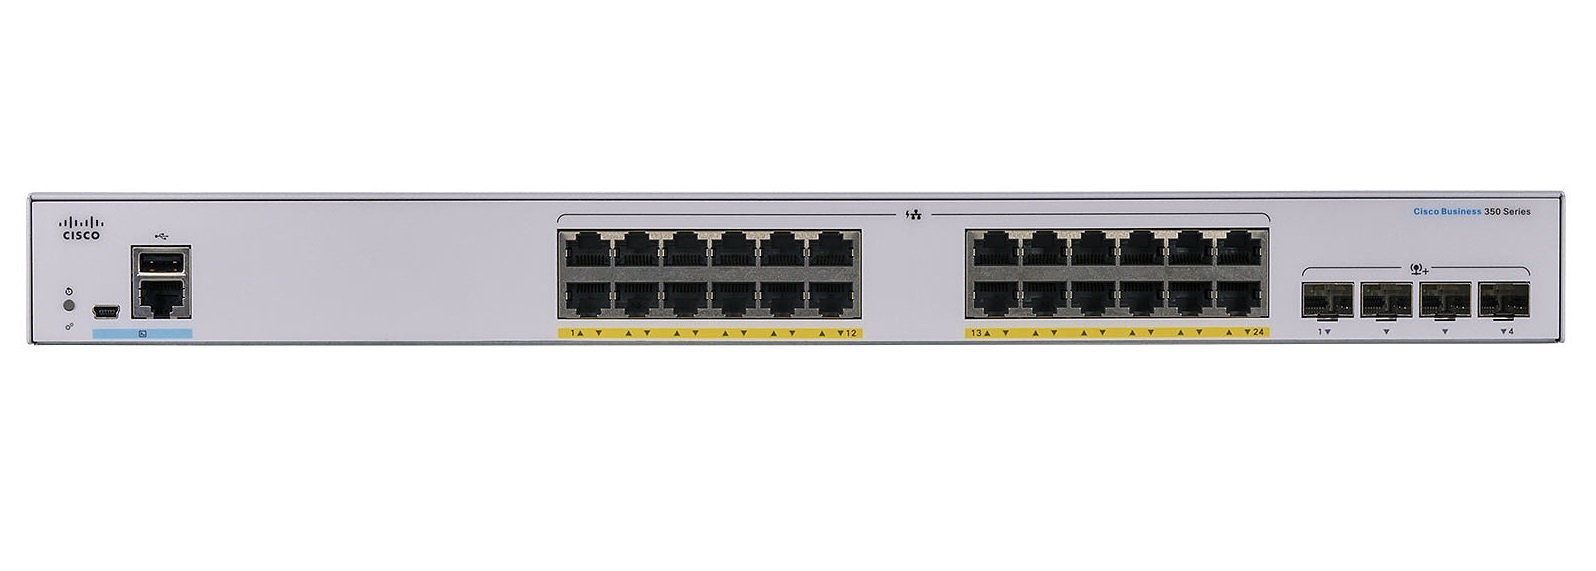 Cisco 350 24 ports Giga POE+ 195W + 4 x 1G SFP uplink, managed switch